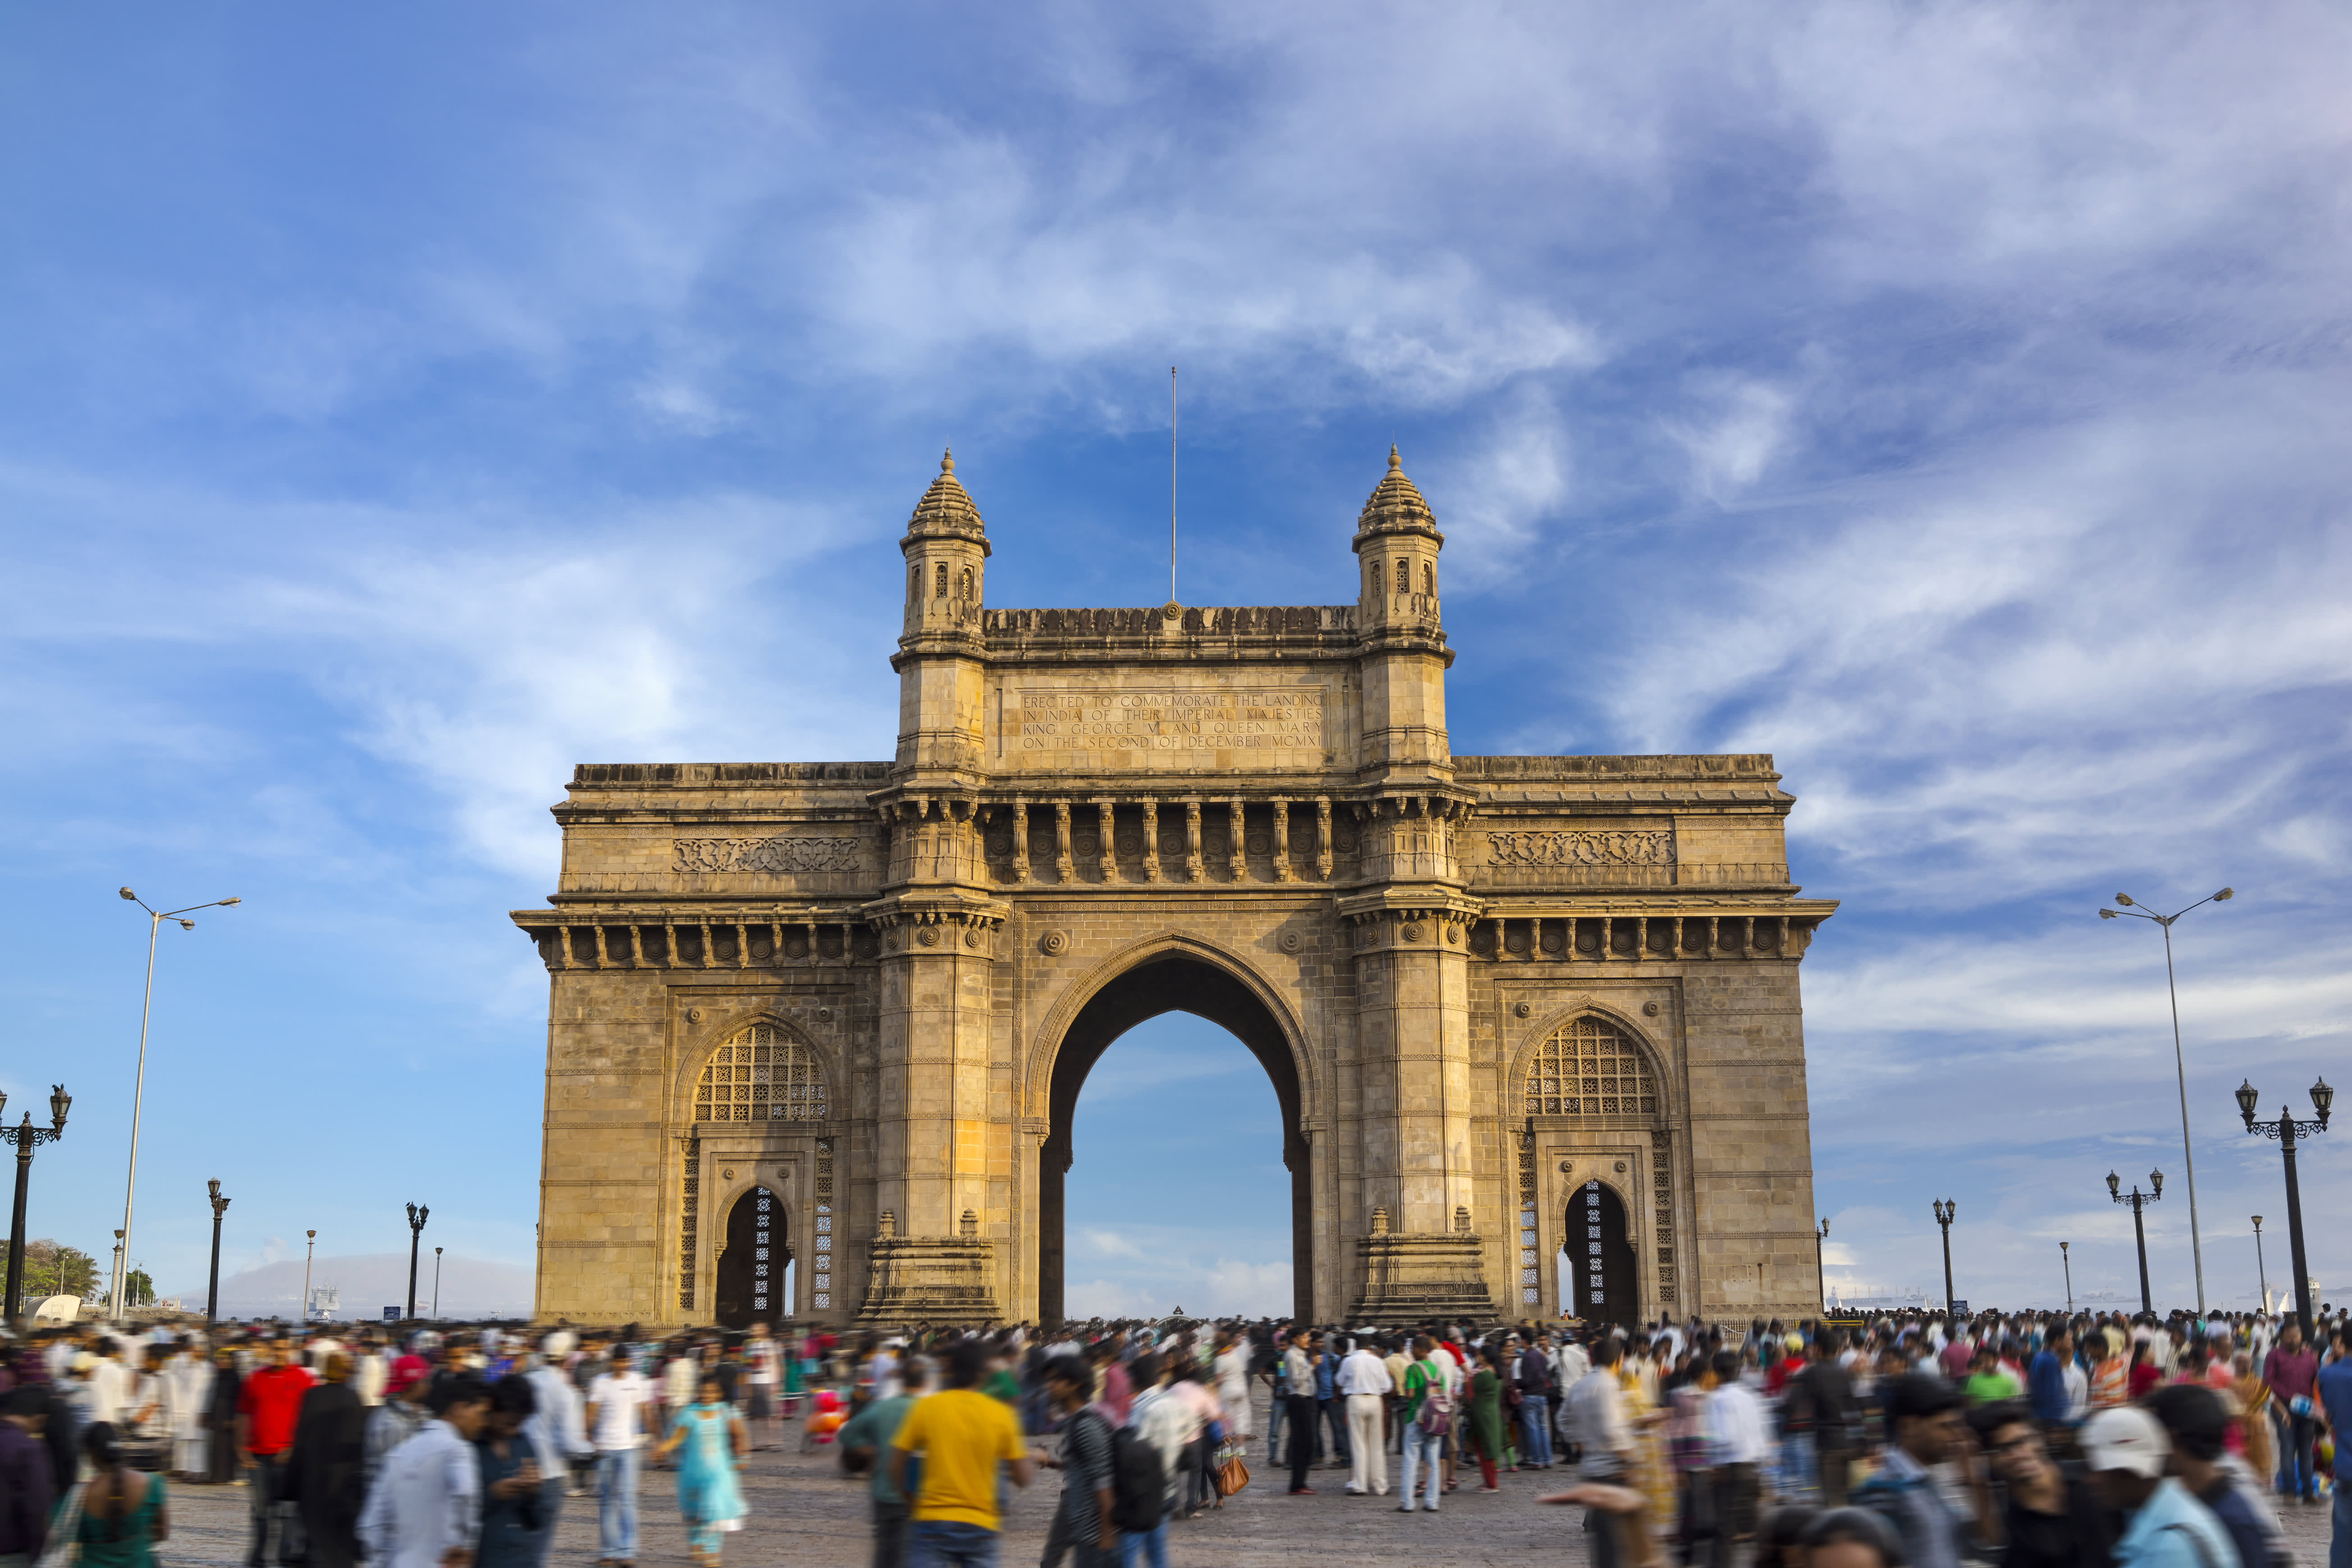 Wisatawan India menghabiskan banyak uang tetapi hanya 1% dari mereka yang bepergian ke luar negeri